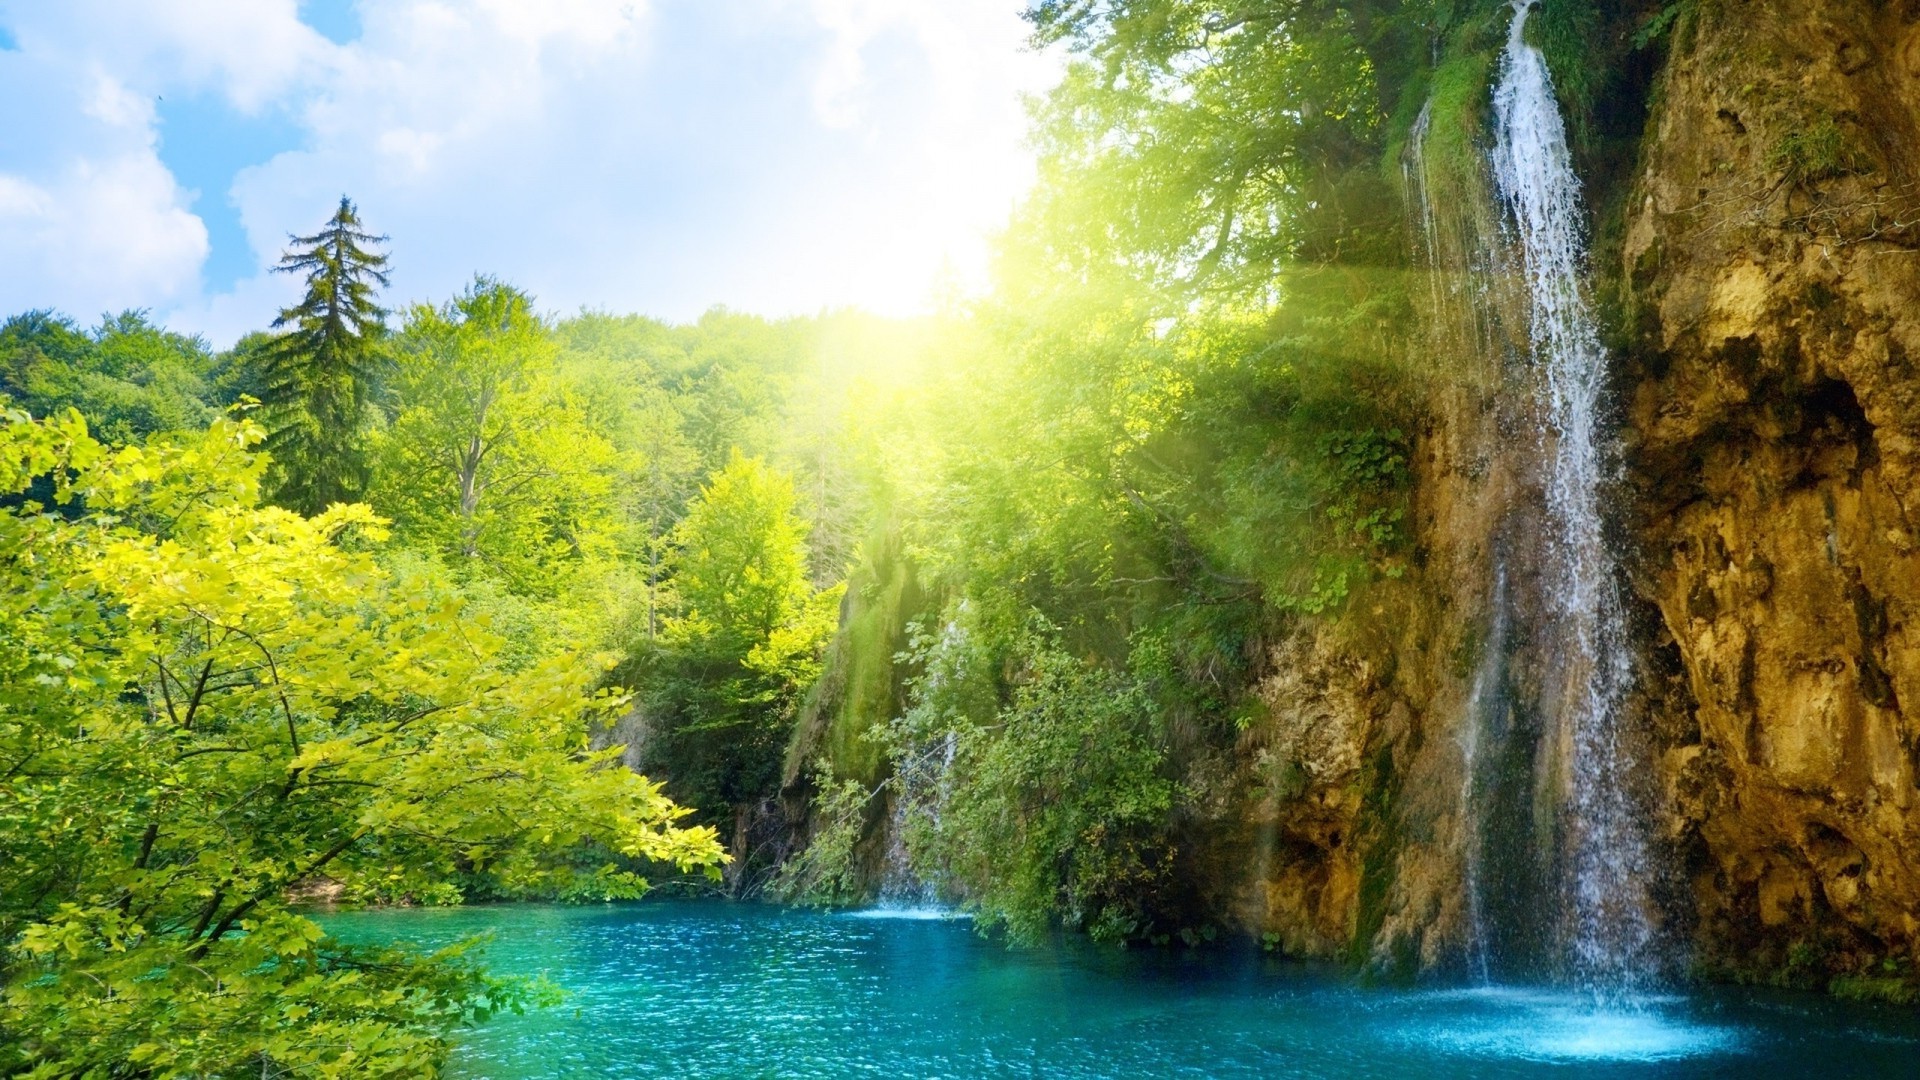 водопады воды природа древесины водопад пейзаж река на открытом воздухе путешествия дерево лист живописный лето рок тропический поток осень пейзажи горы дикий